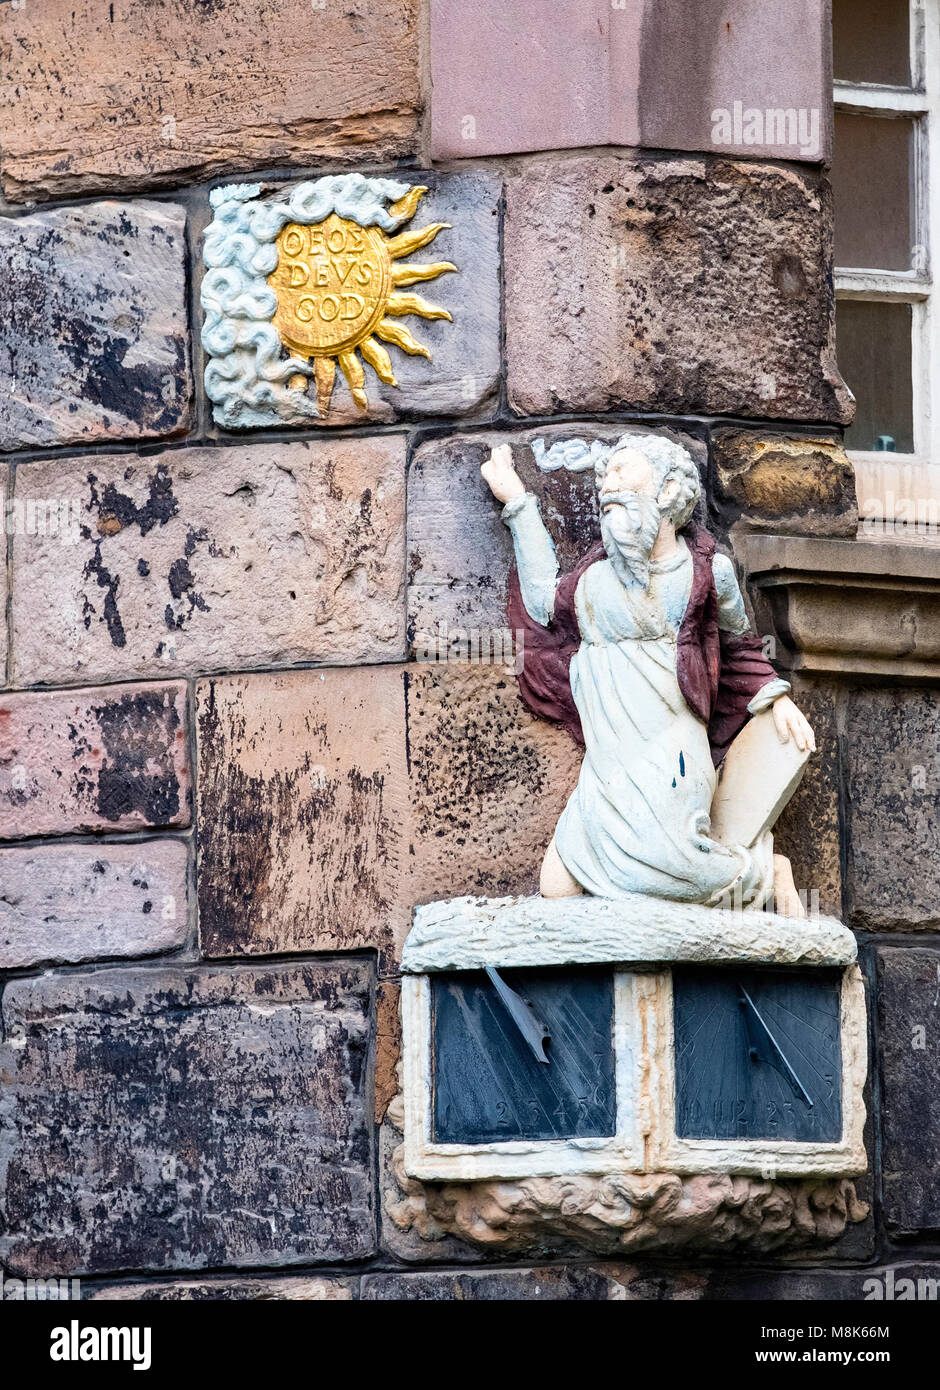 Détail de cadran solaire sur façade de John Knox House sur le Royal Mile, dans la vieille ville d'Édimbourg, Écosse, Royaume-Uni Banque D'Images